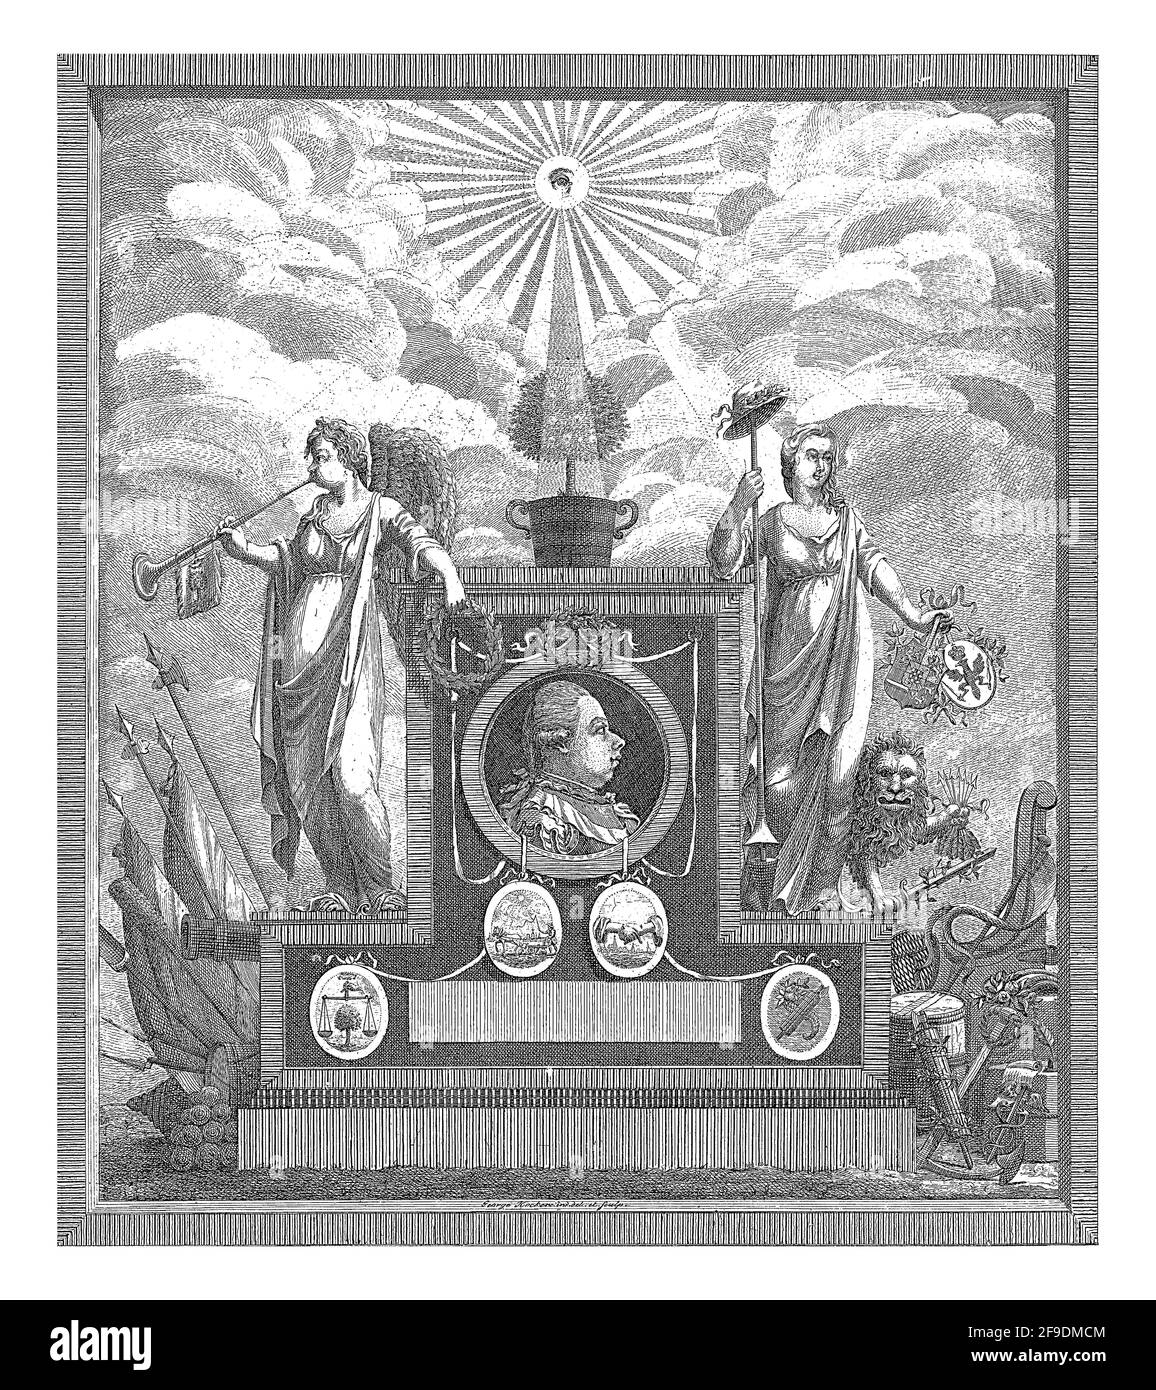 Allegorie mit einem Denkmal zu Ehren des Stadtholder Wilhelm V. und der Wiederherstellung seiner Autorität in Zeeland. Stockfoto